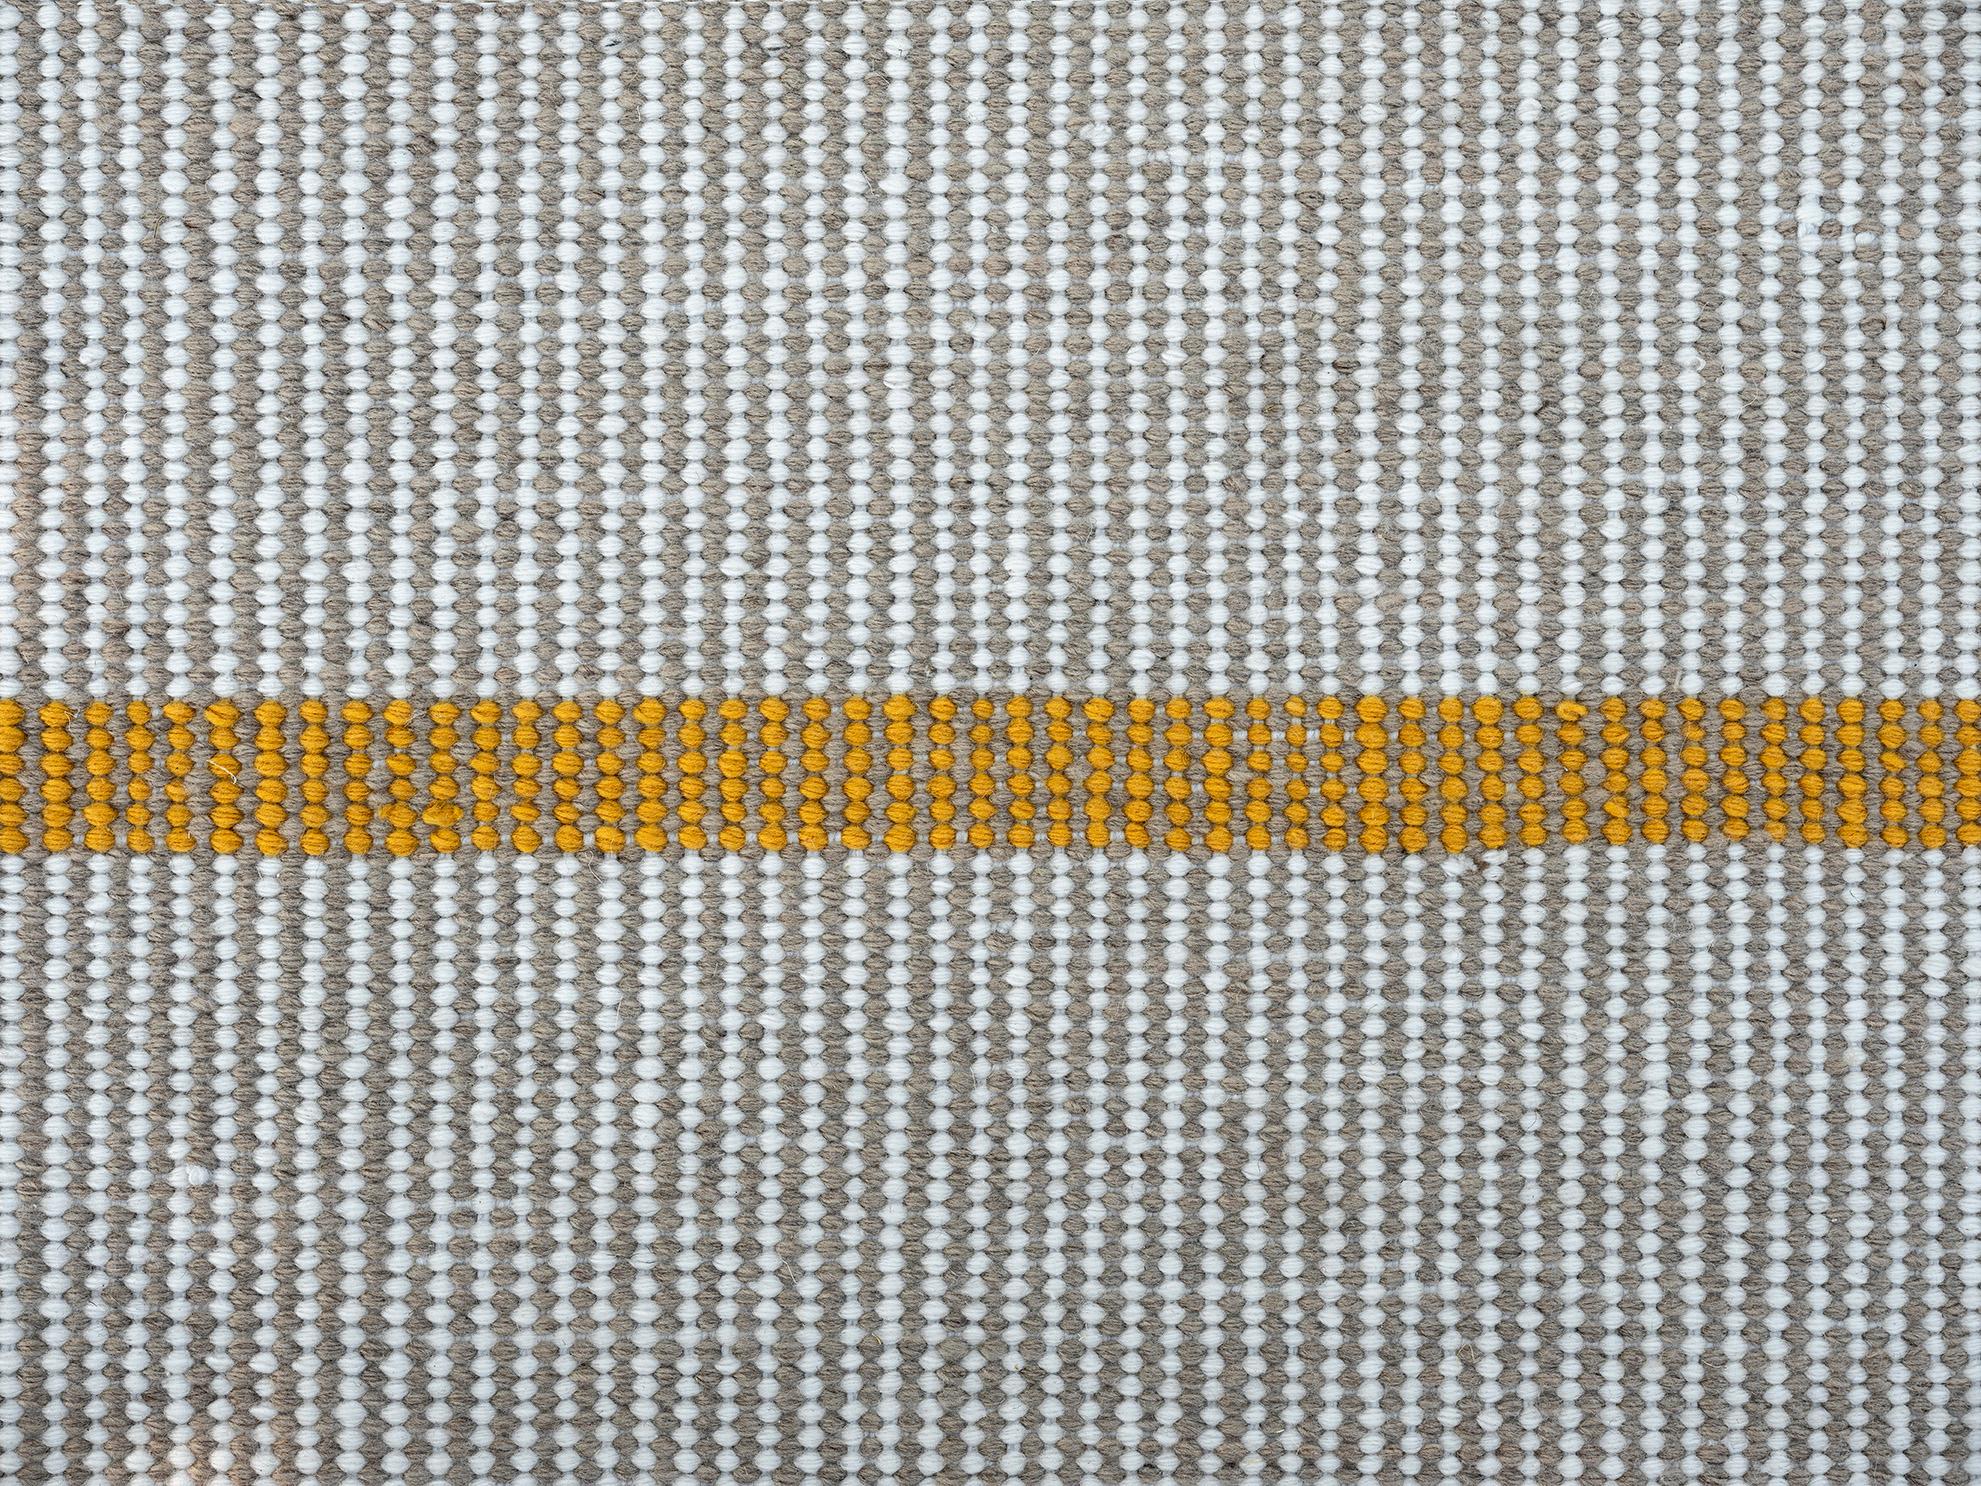 Hand-Woven Modern Handwoven Polypropylene Outdoor Rug Carpet Beige&Mustard Touareg For Sale